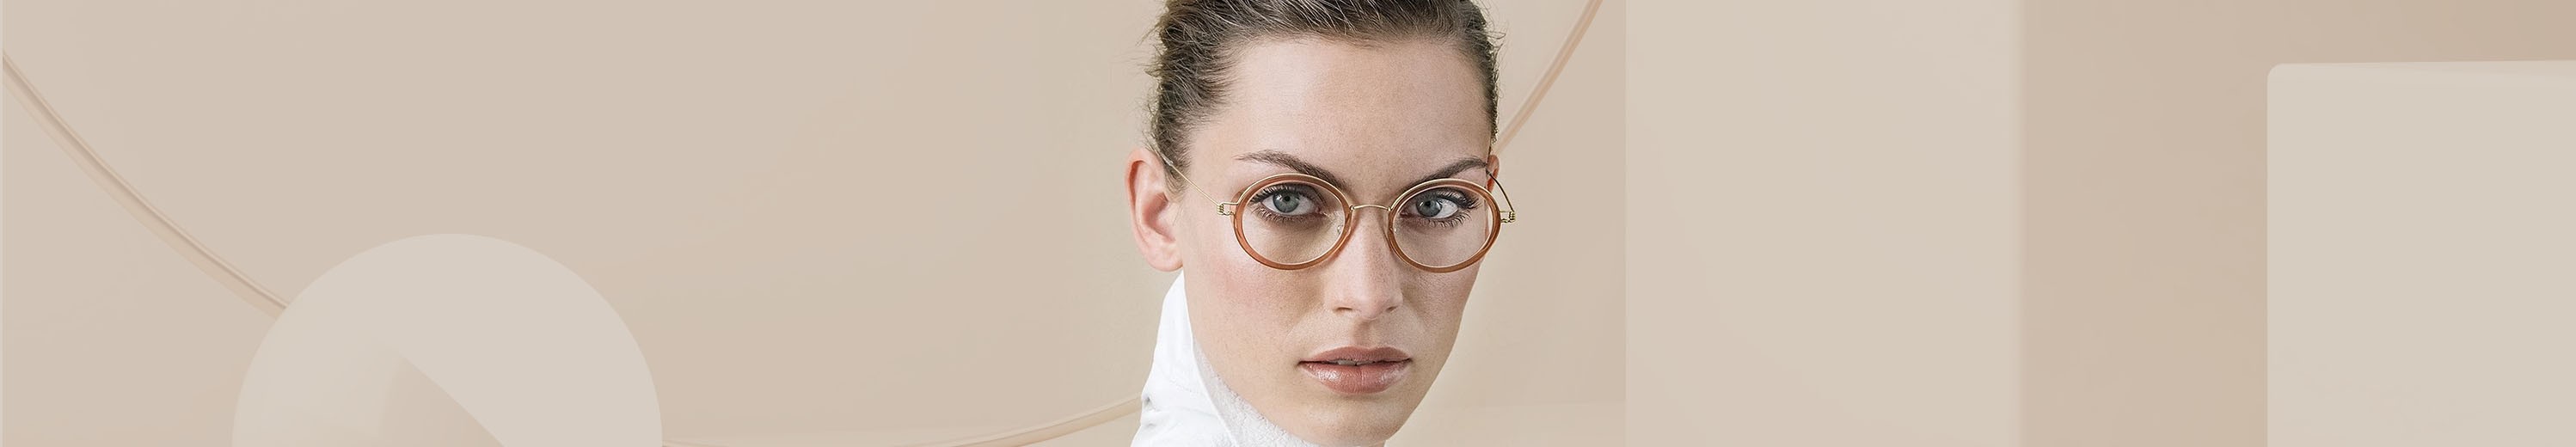 Oval Eyeglasses for Women